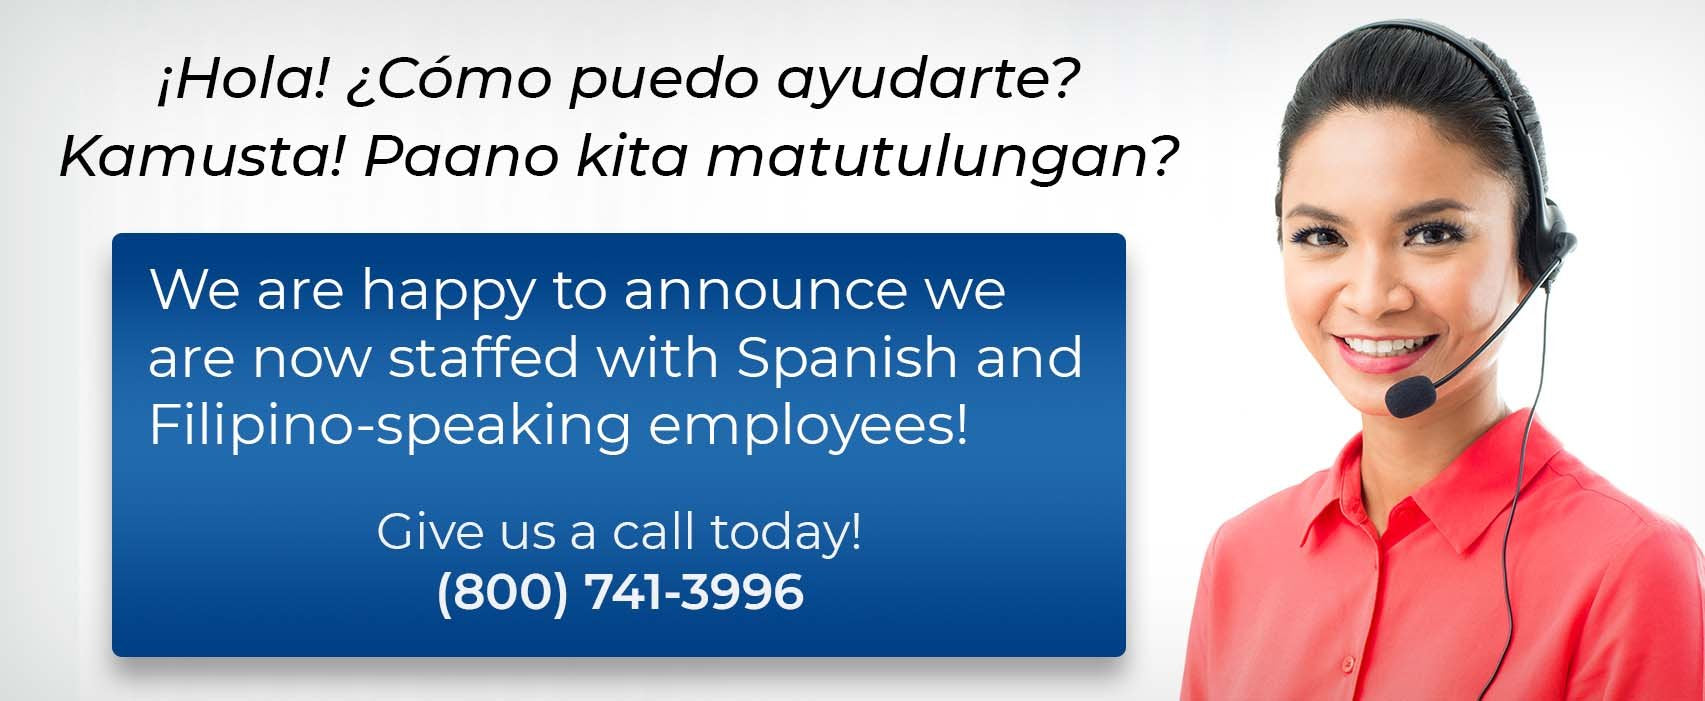 Spanish and Filipino speakers